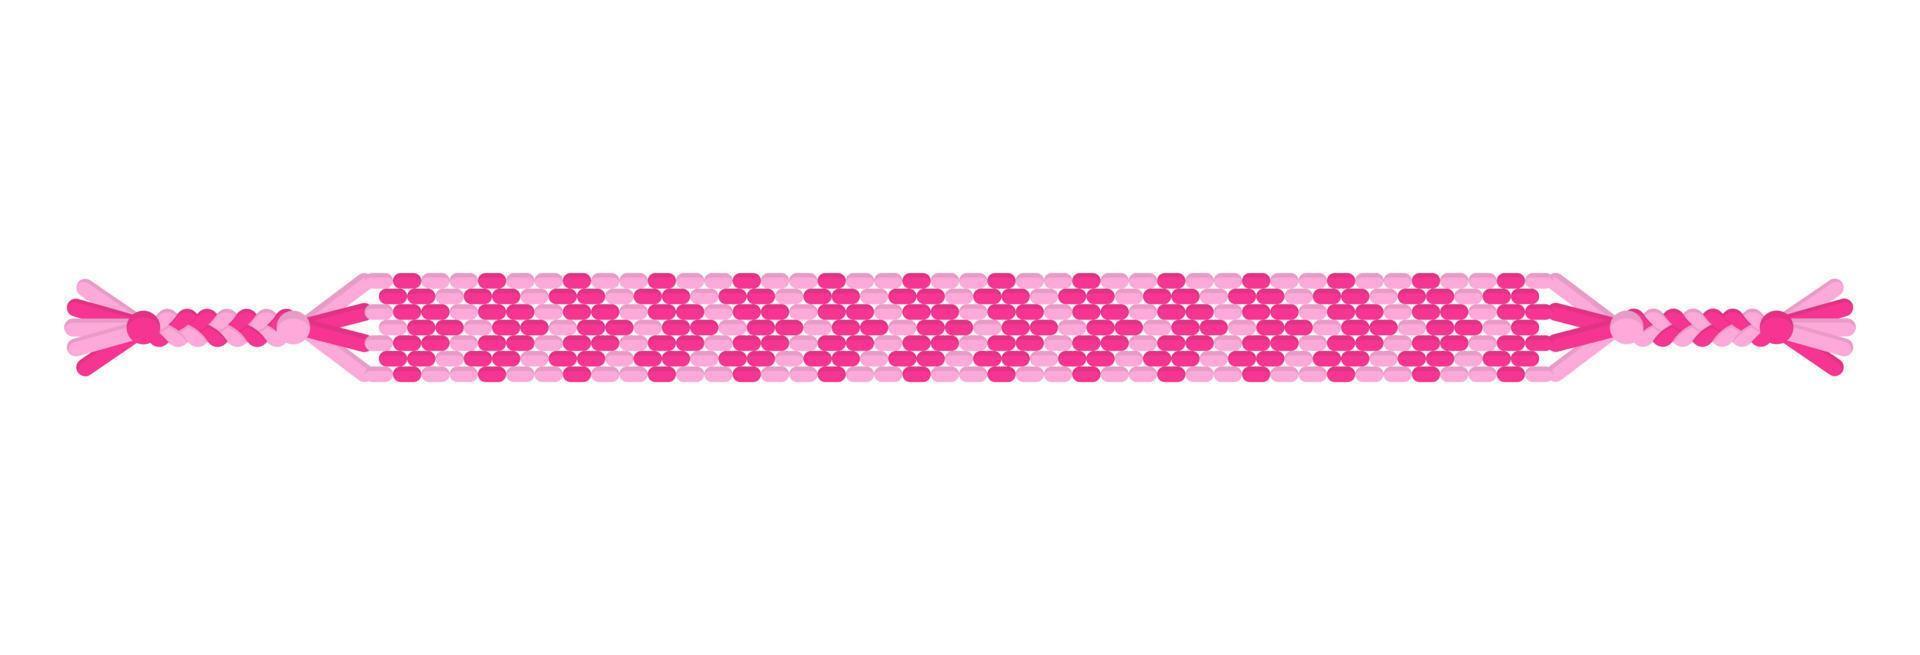 vector amor pulseira de amizade hippie artesanal de fios cor de rosa.